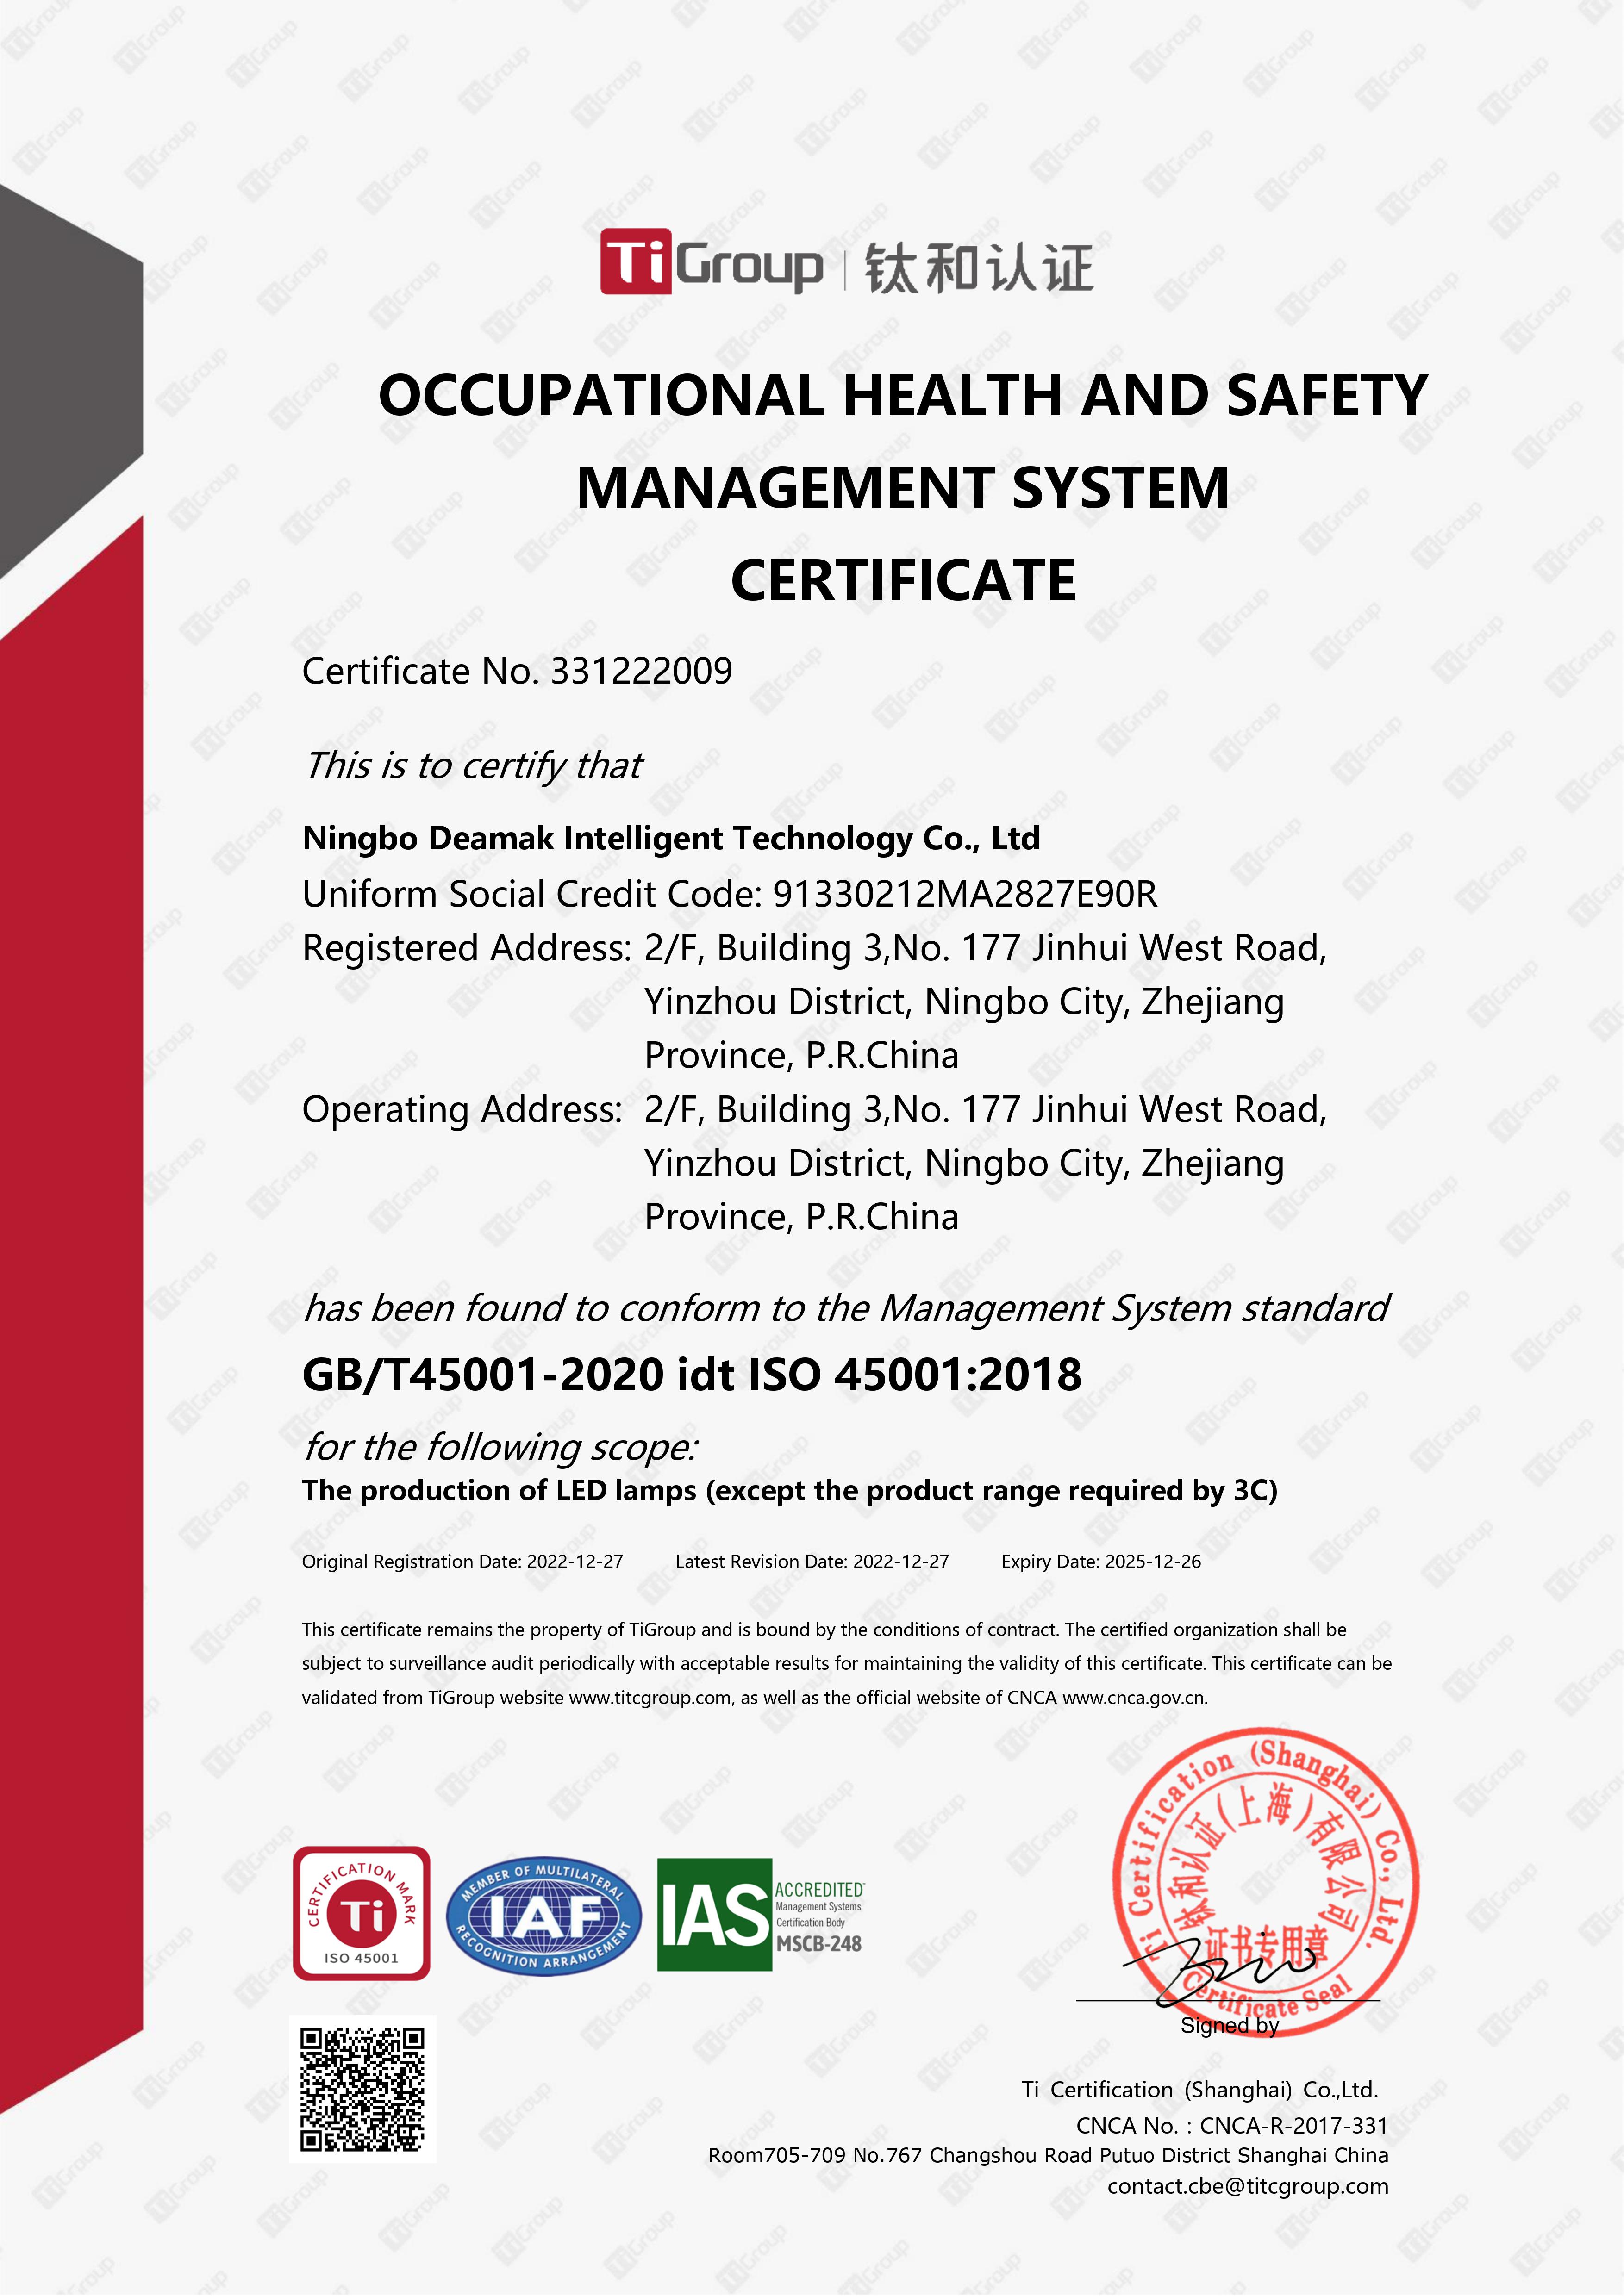 Ningbo Deamak ISO 45001